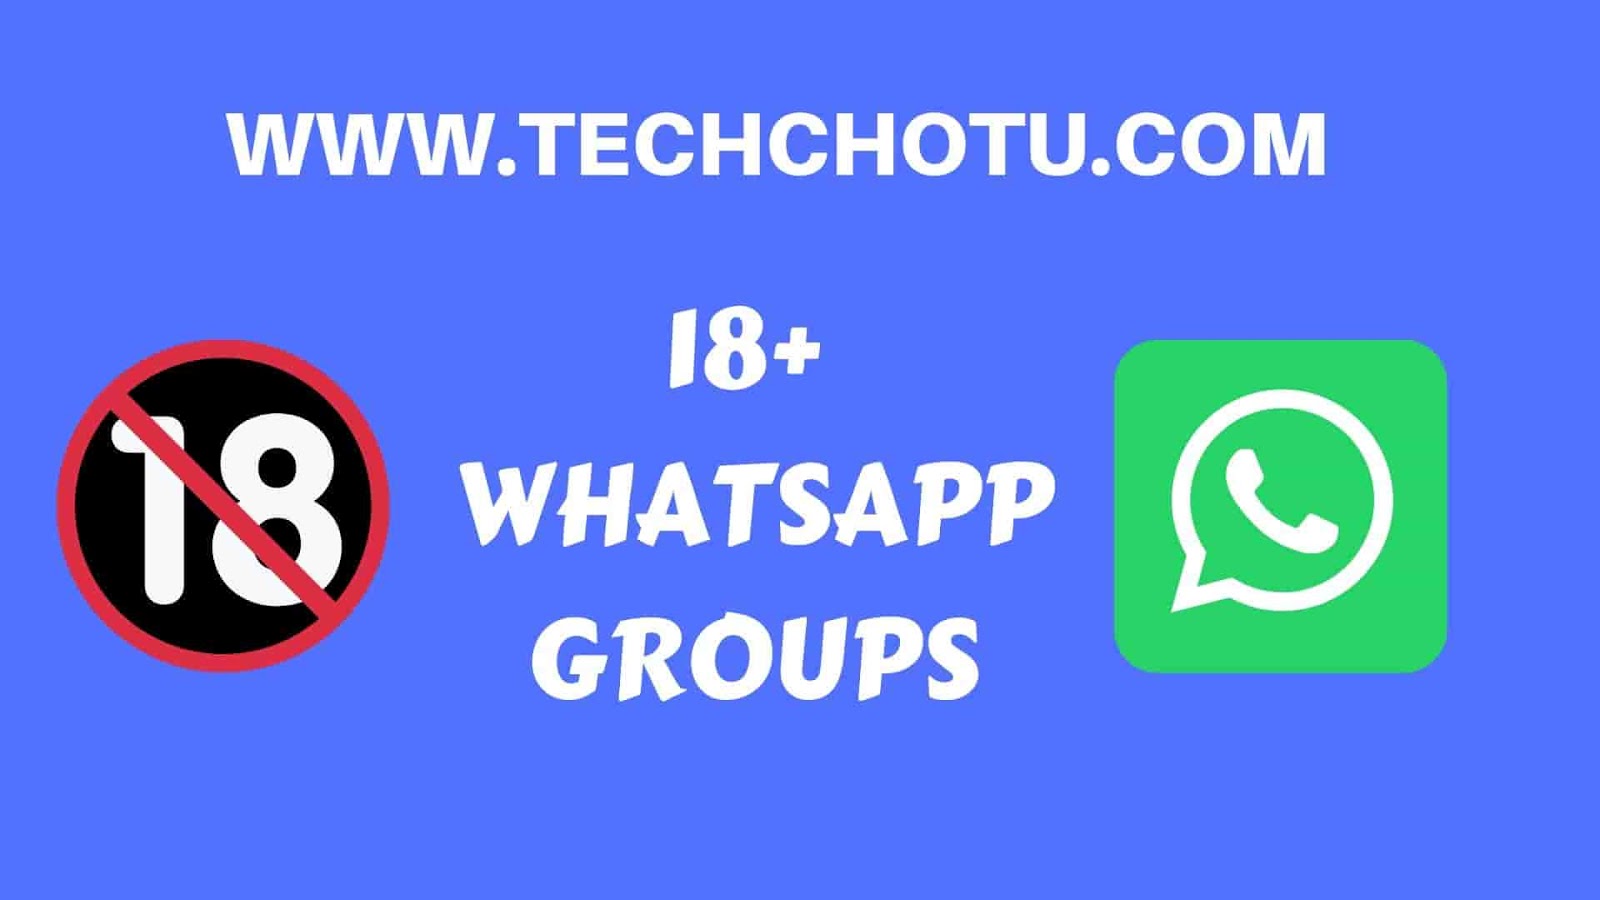 Shada Kapoor Xxxxx Saxey Porn - 18+ WHATSAPP GROUP LINKS - TECHCHOTU:WhatsApp Group Links 2020 ...